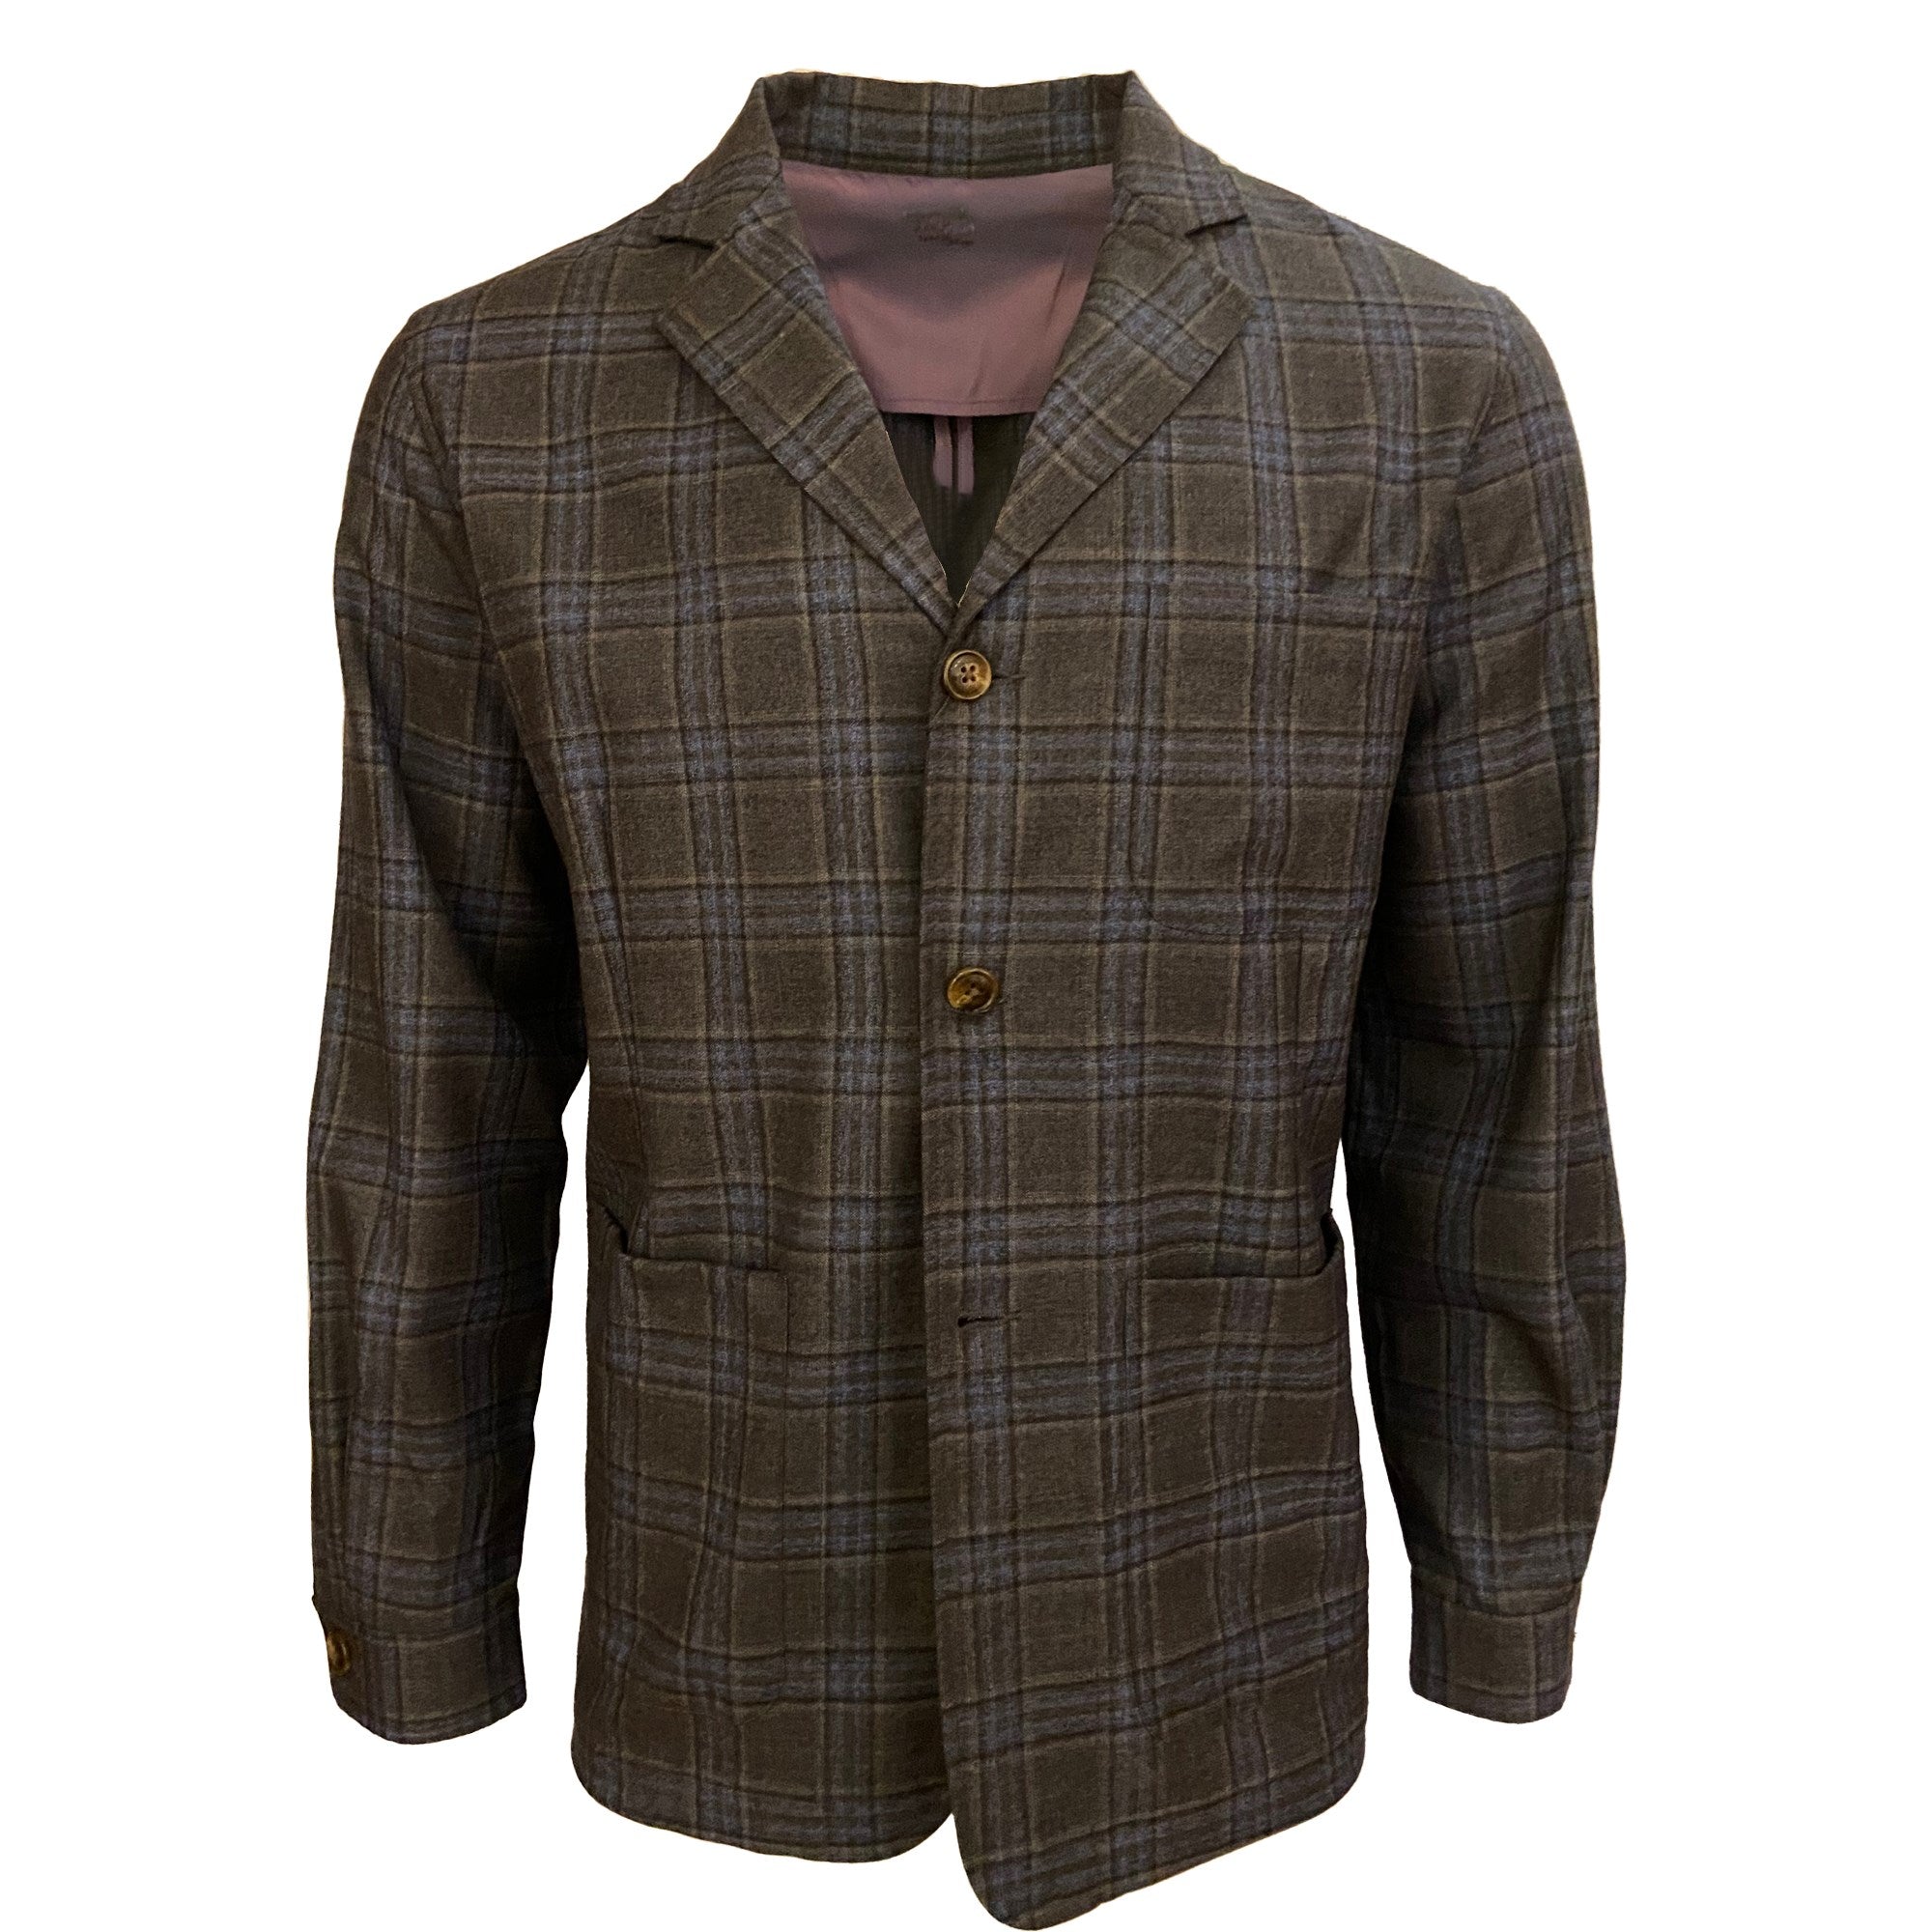 Wool Blazer Shirt Jacket in Grey and Olive Plaid by Viyella